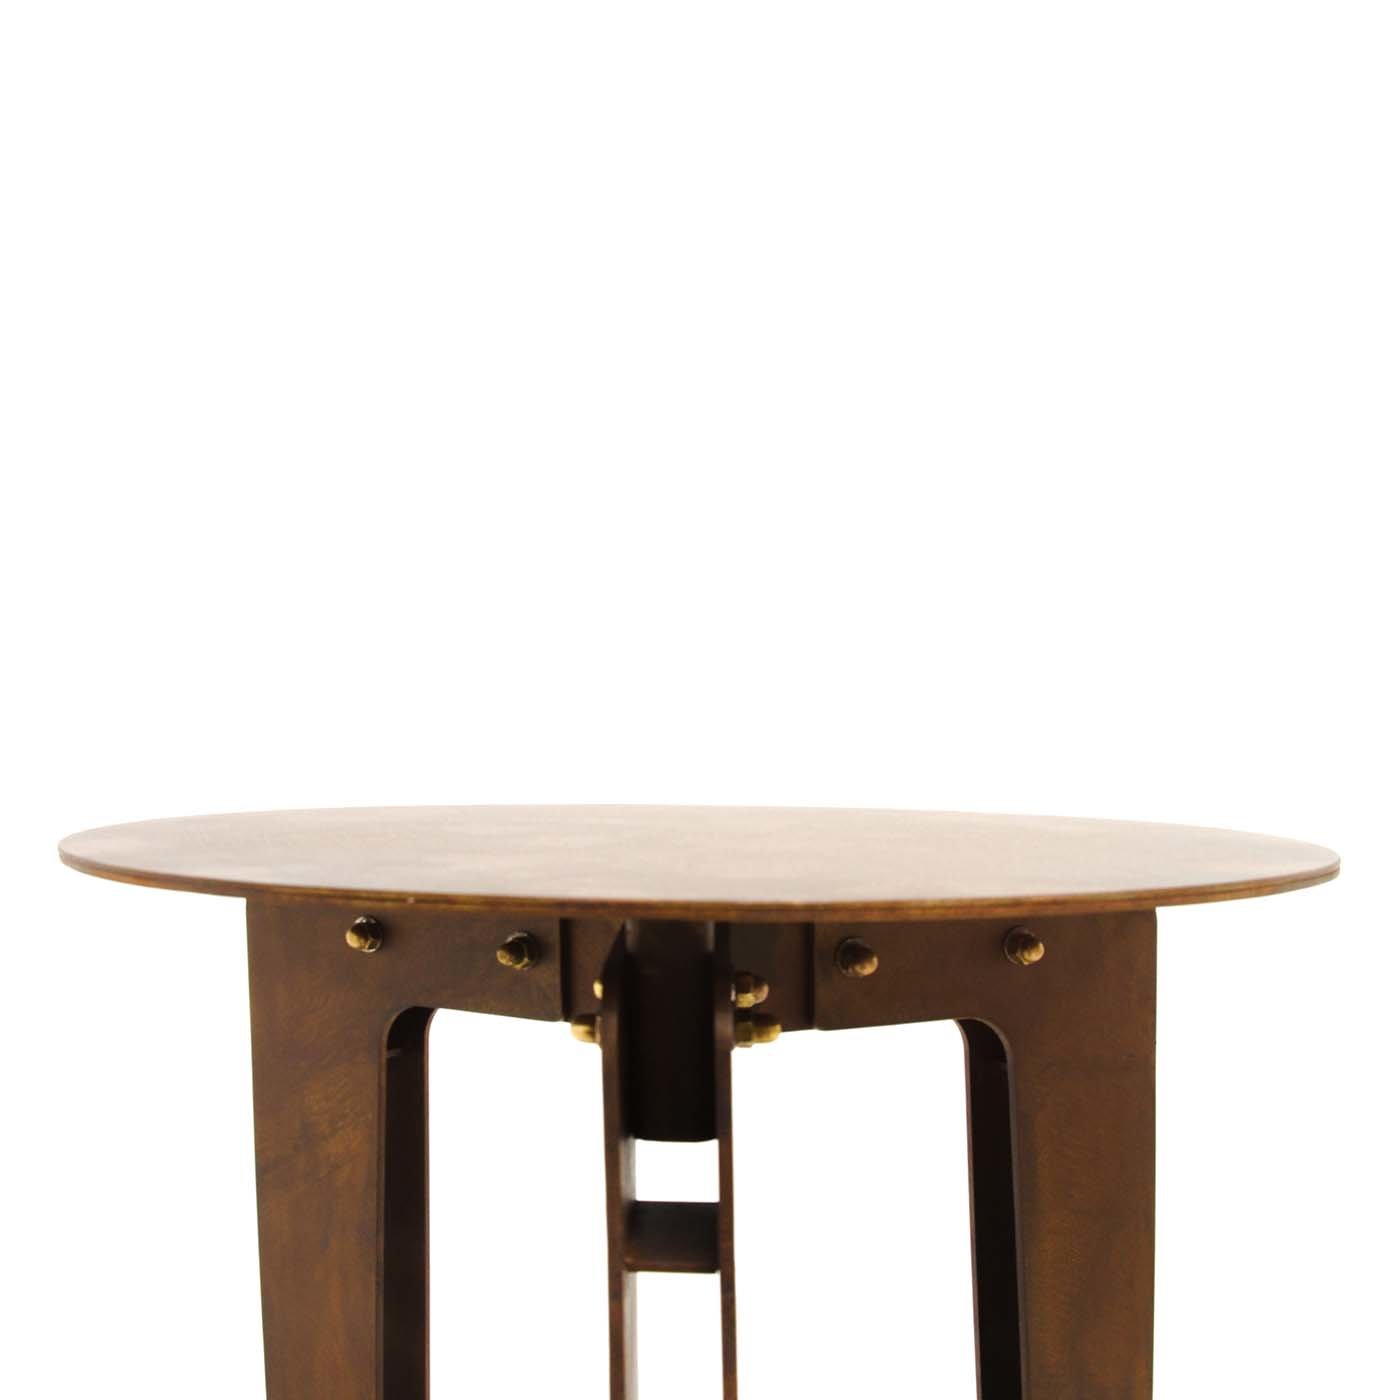 Leggero Corten High Table by Giuseppe Pio D’Altilia - Alternative view 3